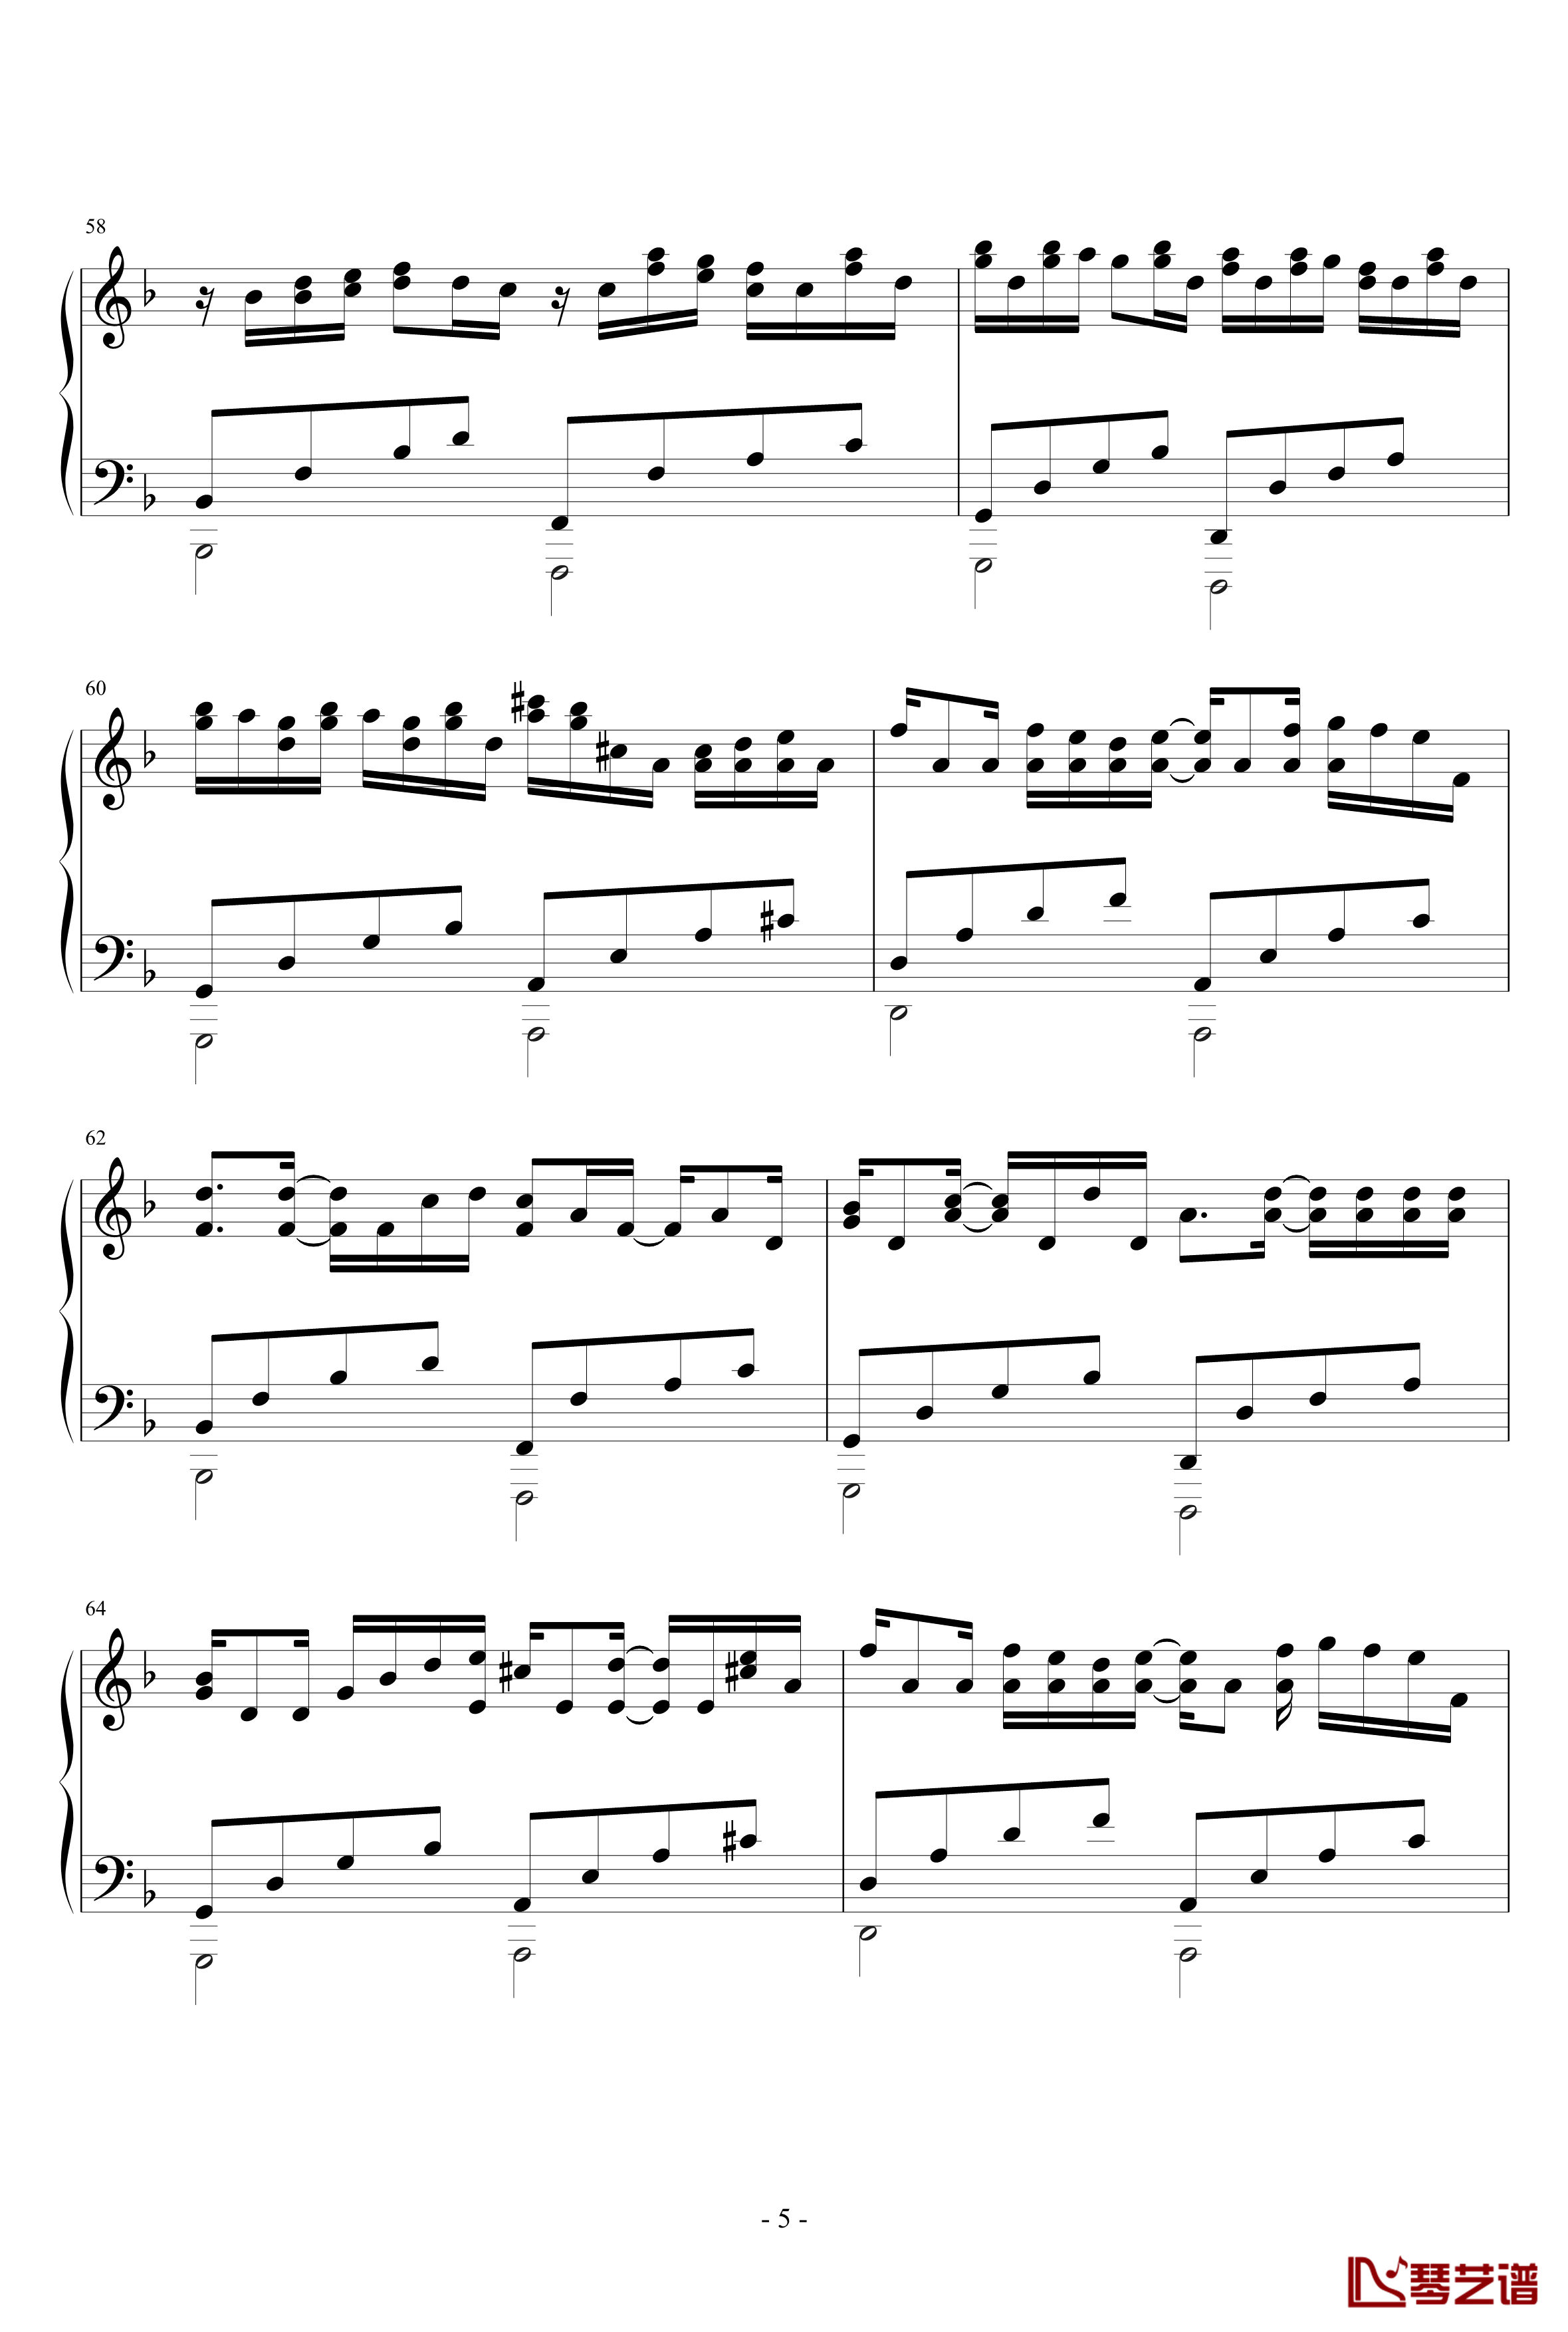 卡农小调版钢琴谱-帕赫贝尔-Pachelbel5